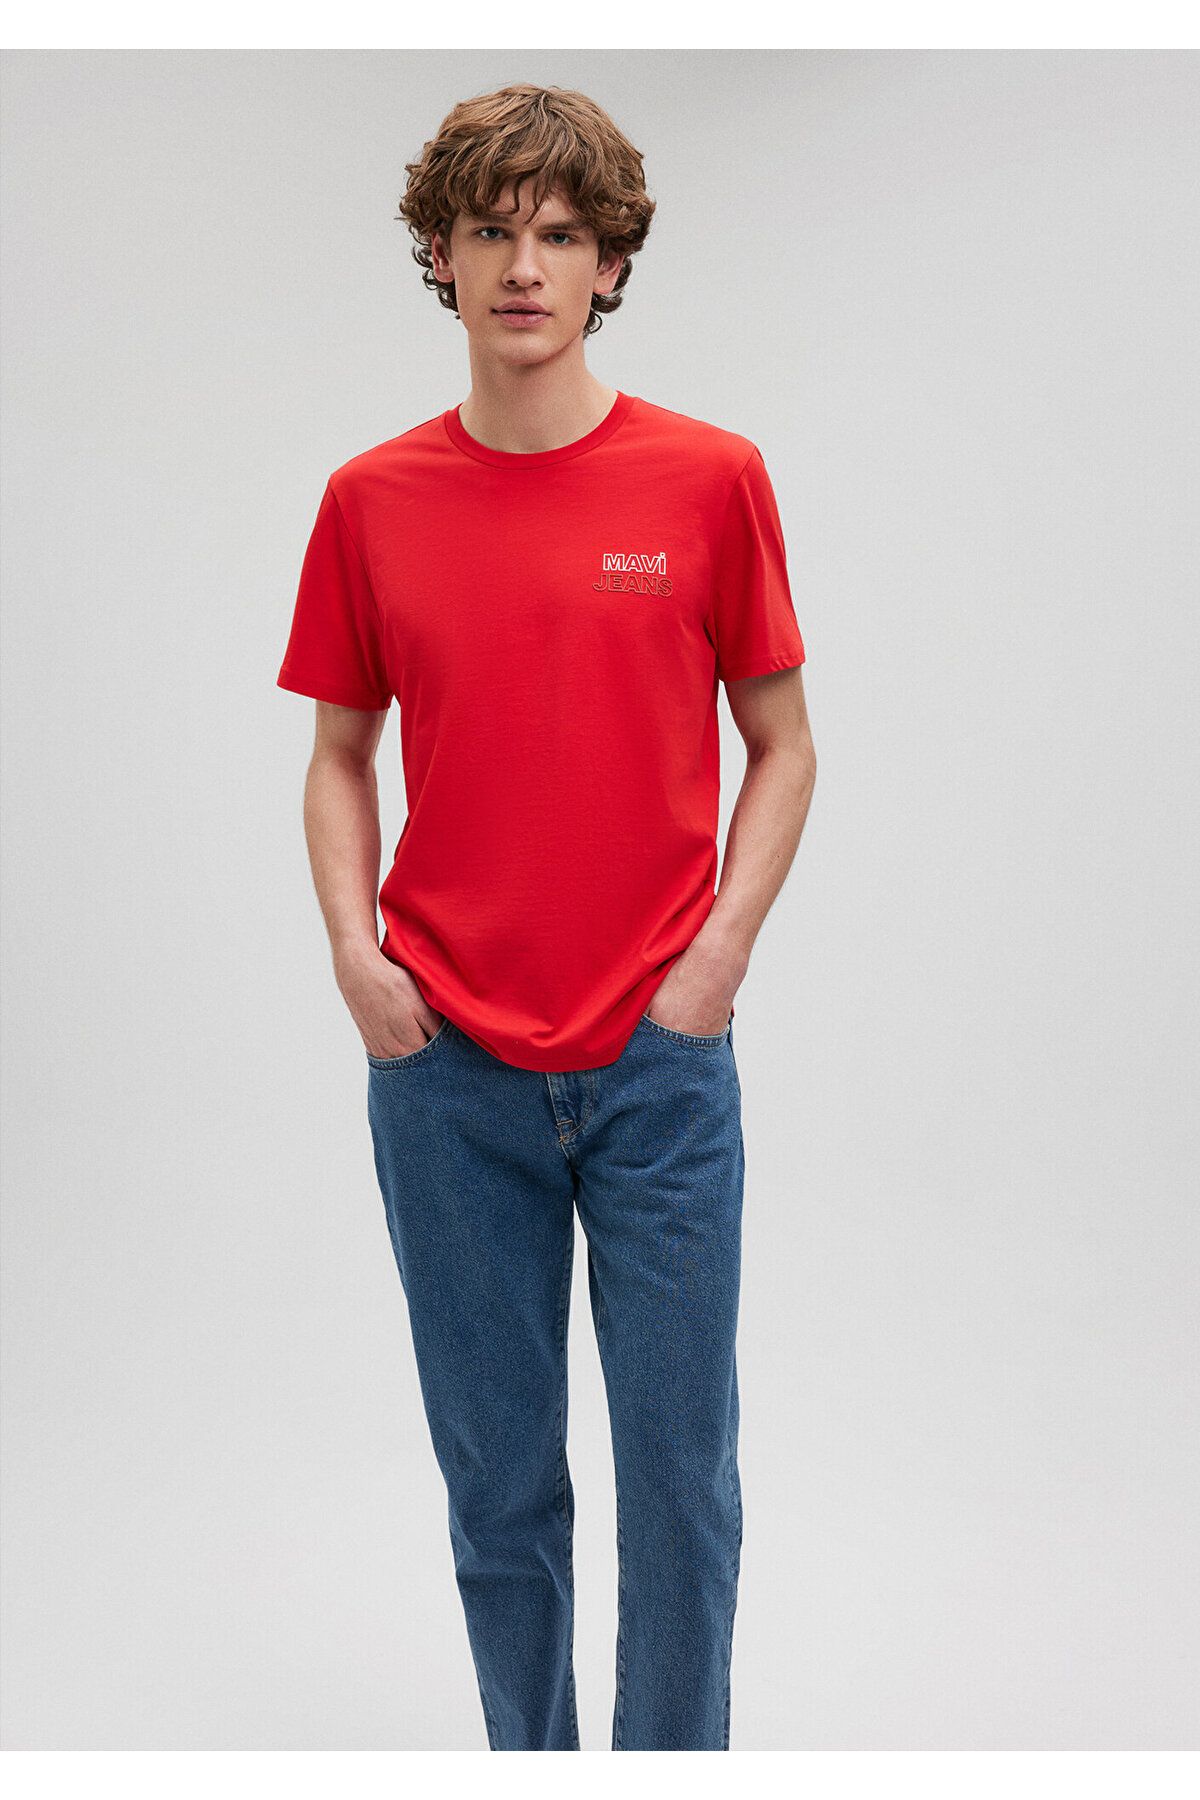 Mavi Jeans Baskılı Kırmızı Tişört Slim Fit / Dar Kesim 066841-33099